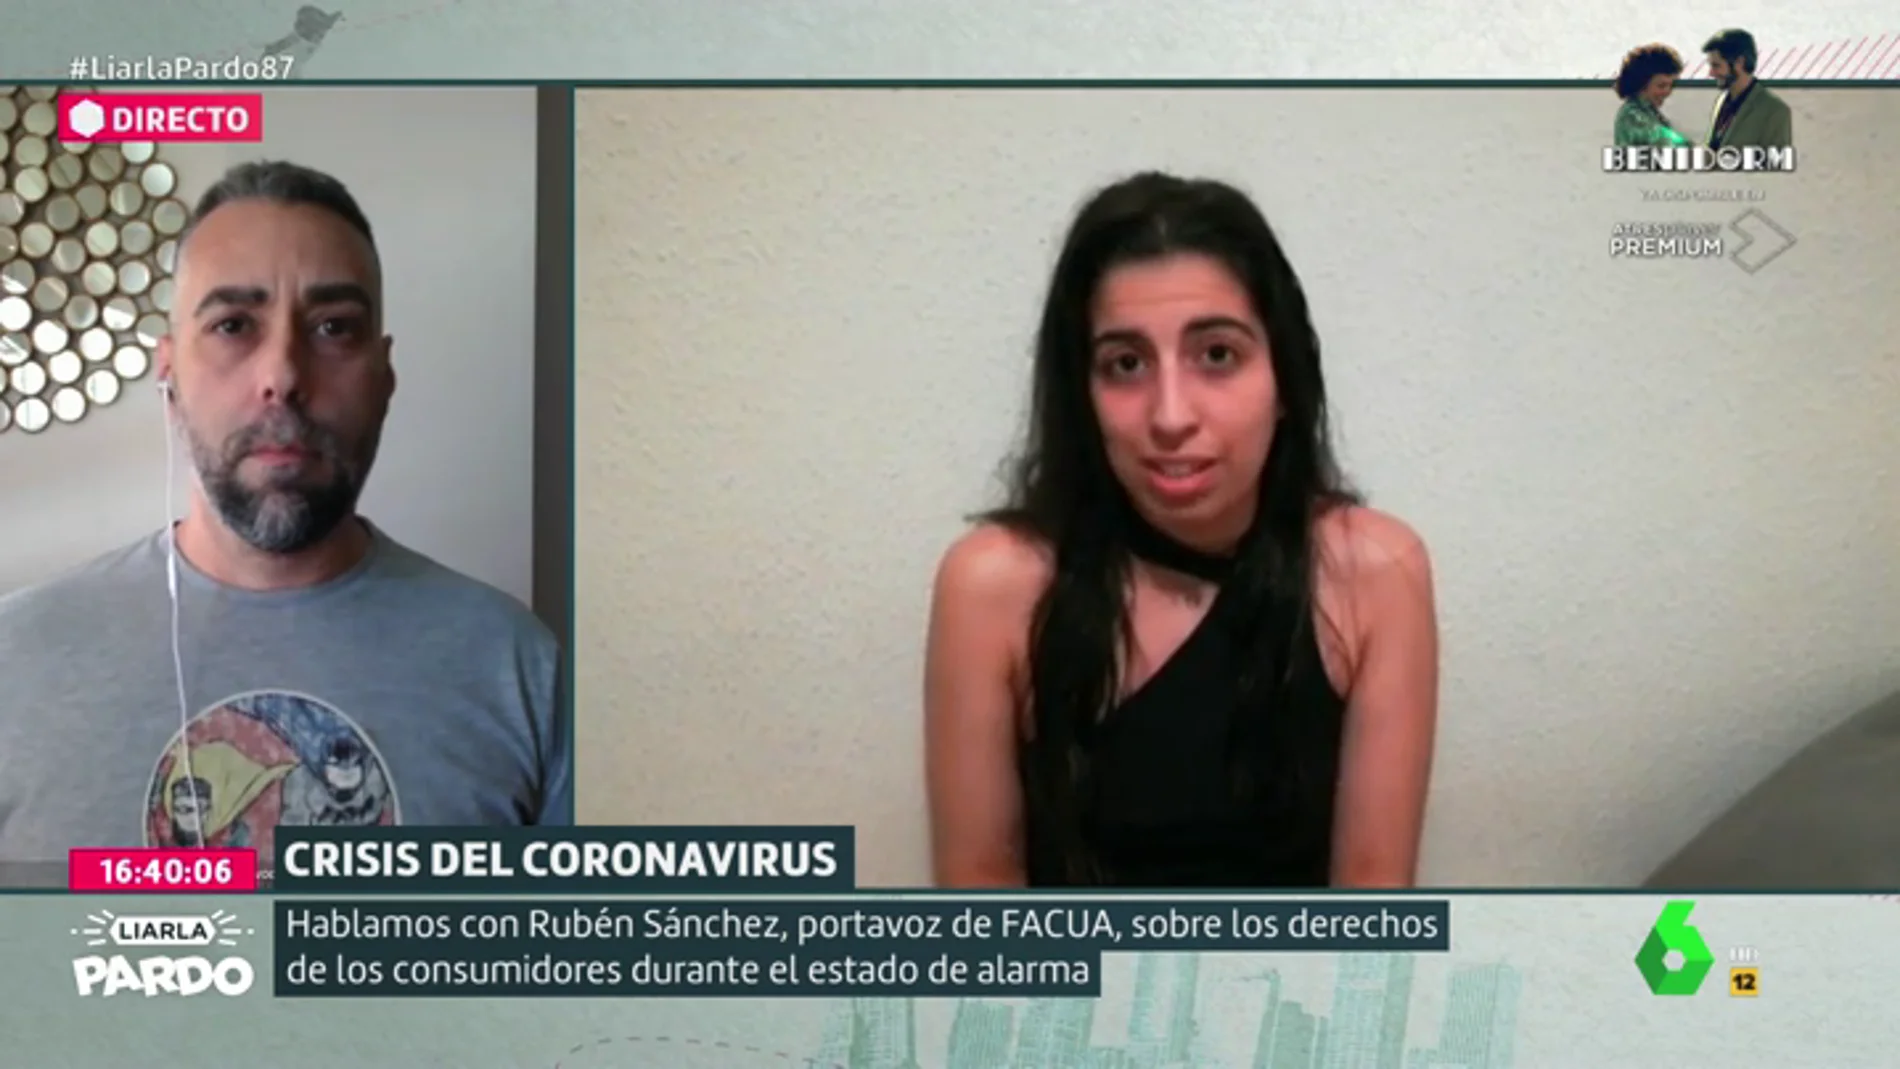  Rubén Sánchez, portavoz de Facua, responde a las dudas de los consumidores por la crisis del coronavirus